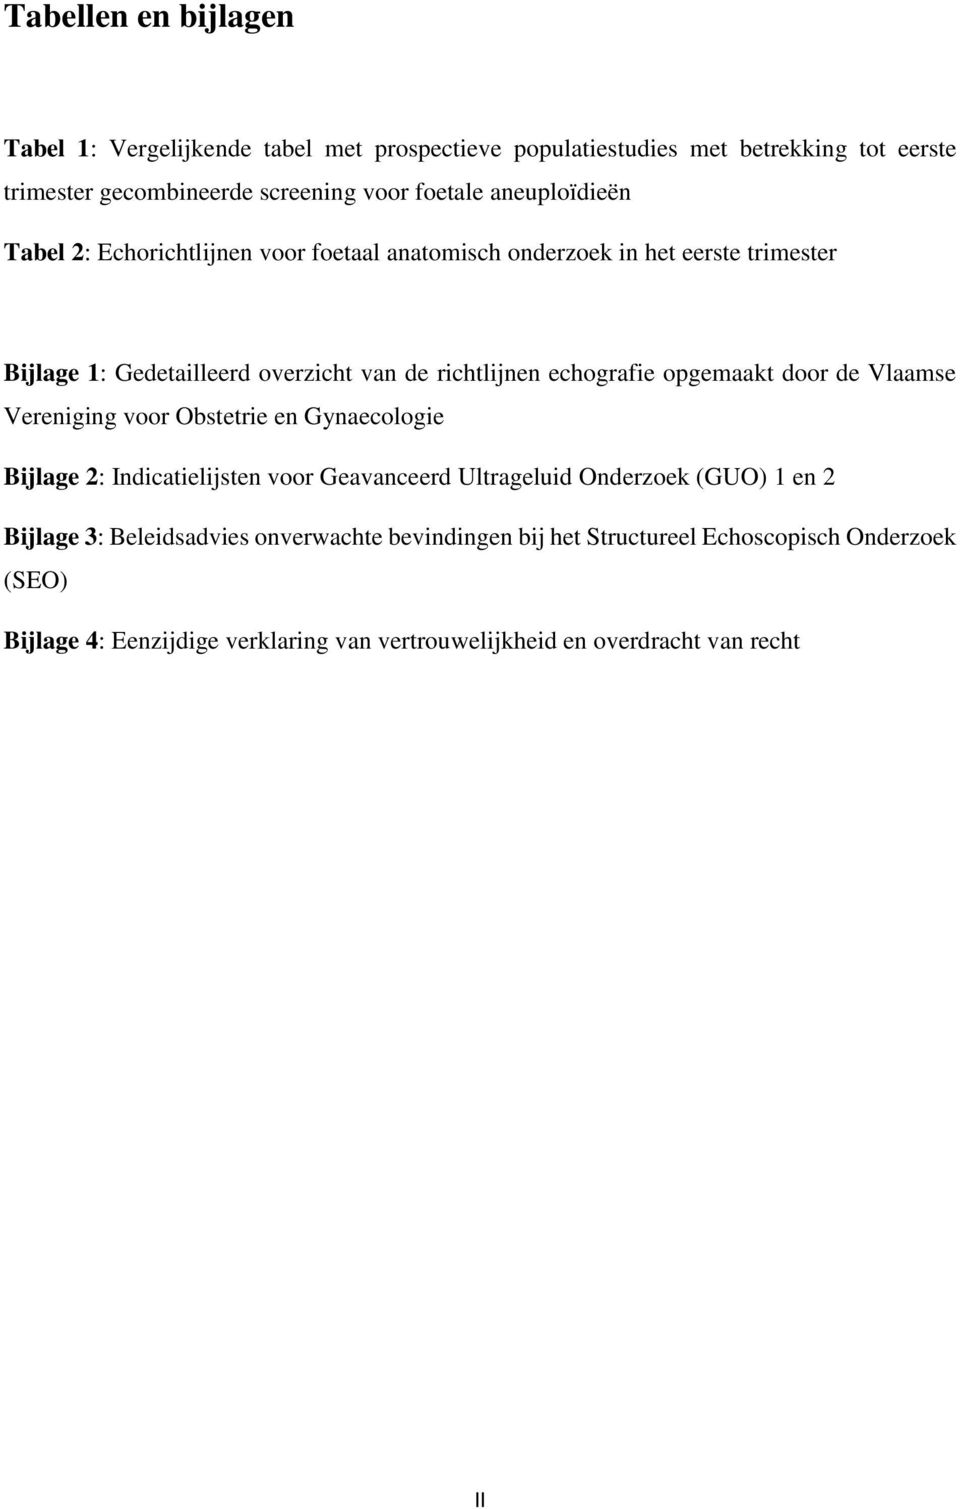 opgemaakt door de Vlaamse Vereniging voor Obstetrie en Gynaecologie Bijlage 2: Indicatielijsten voor Geavanceerd Ultrageluid Onderzoek (GUO) 1 en 2 Bijlage 3: